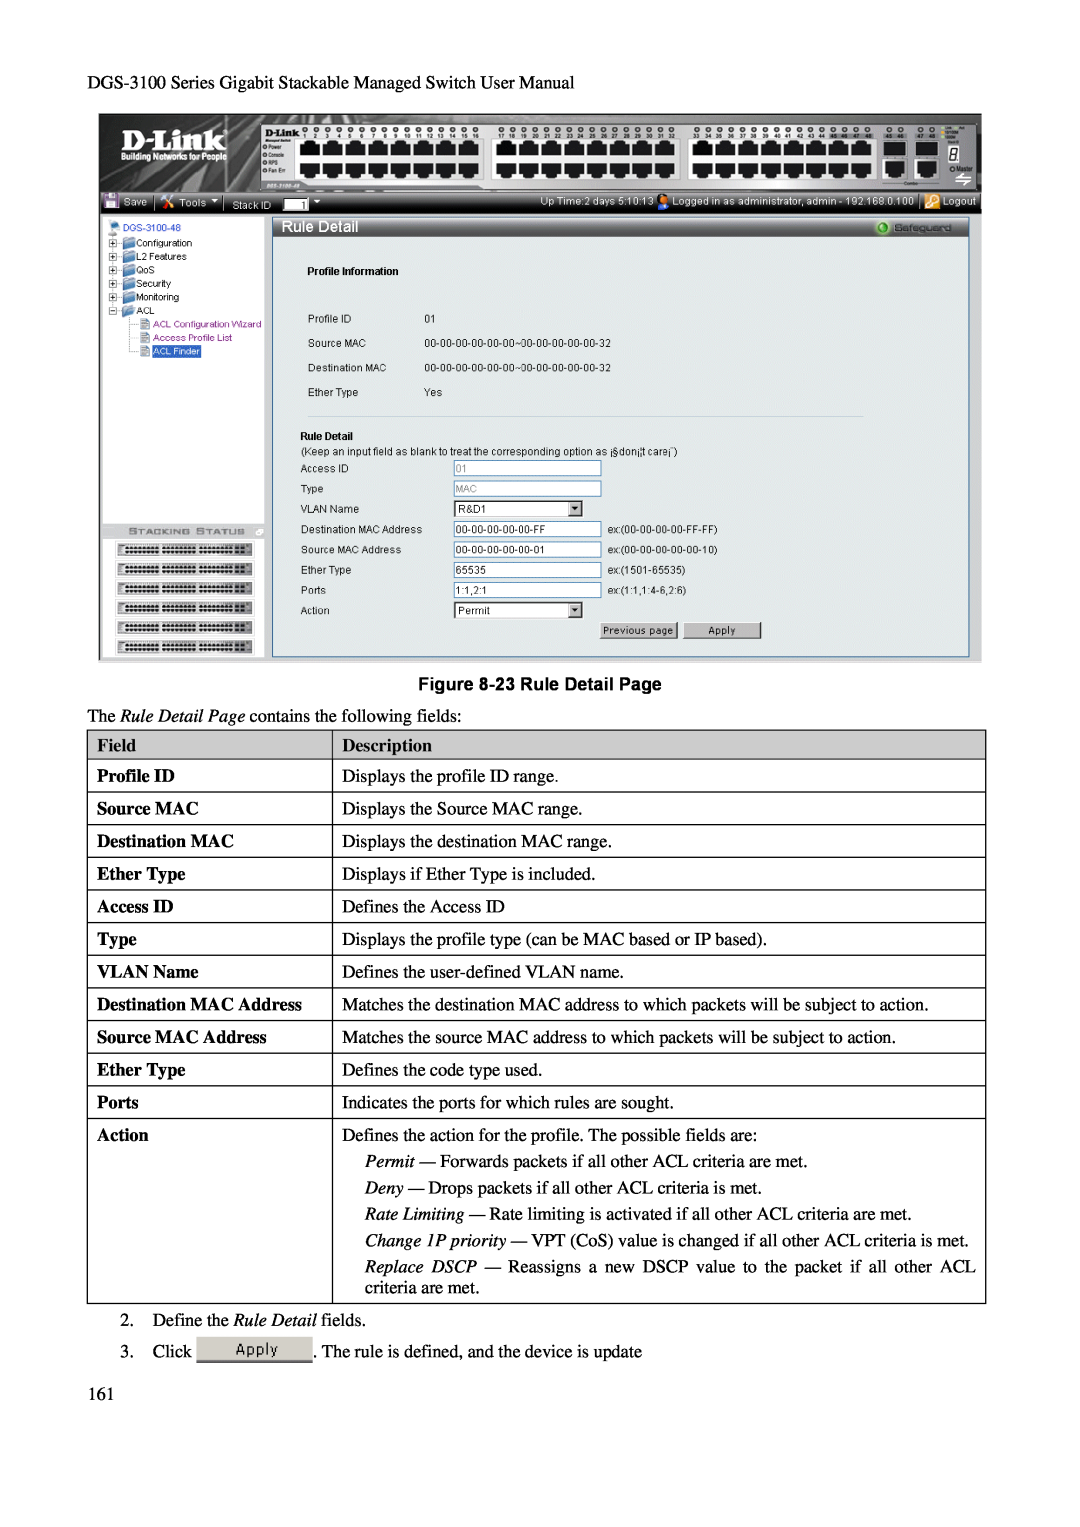 D-Link DGS-3100 23 Rule Detail Page, Field, Description, Profile ID, Source MAC, Destination MAC, Ether Type, Access ID 